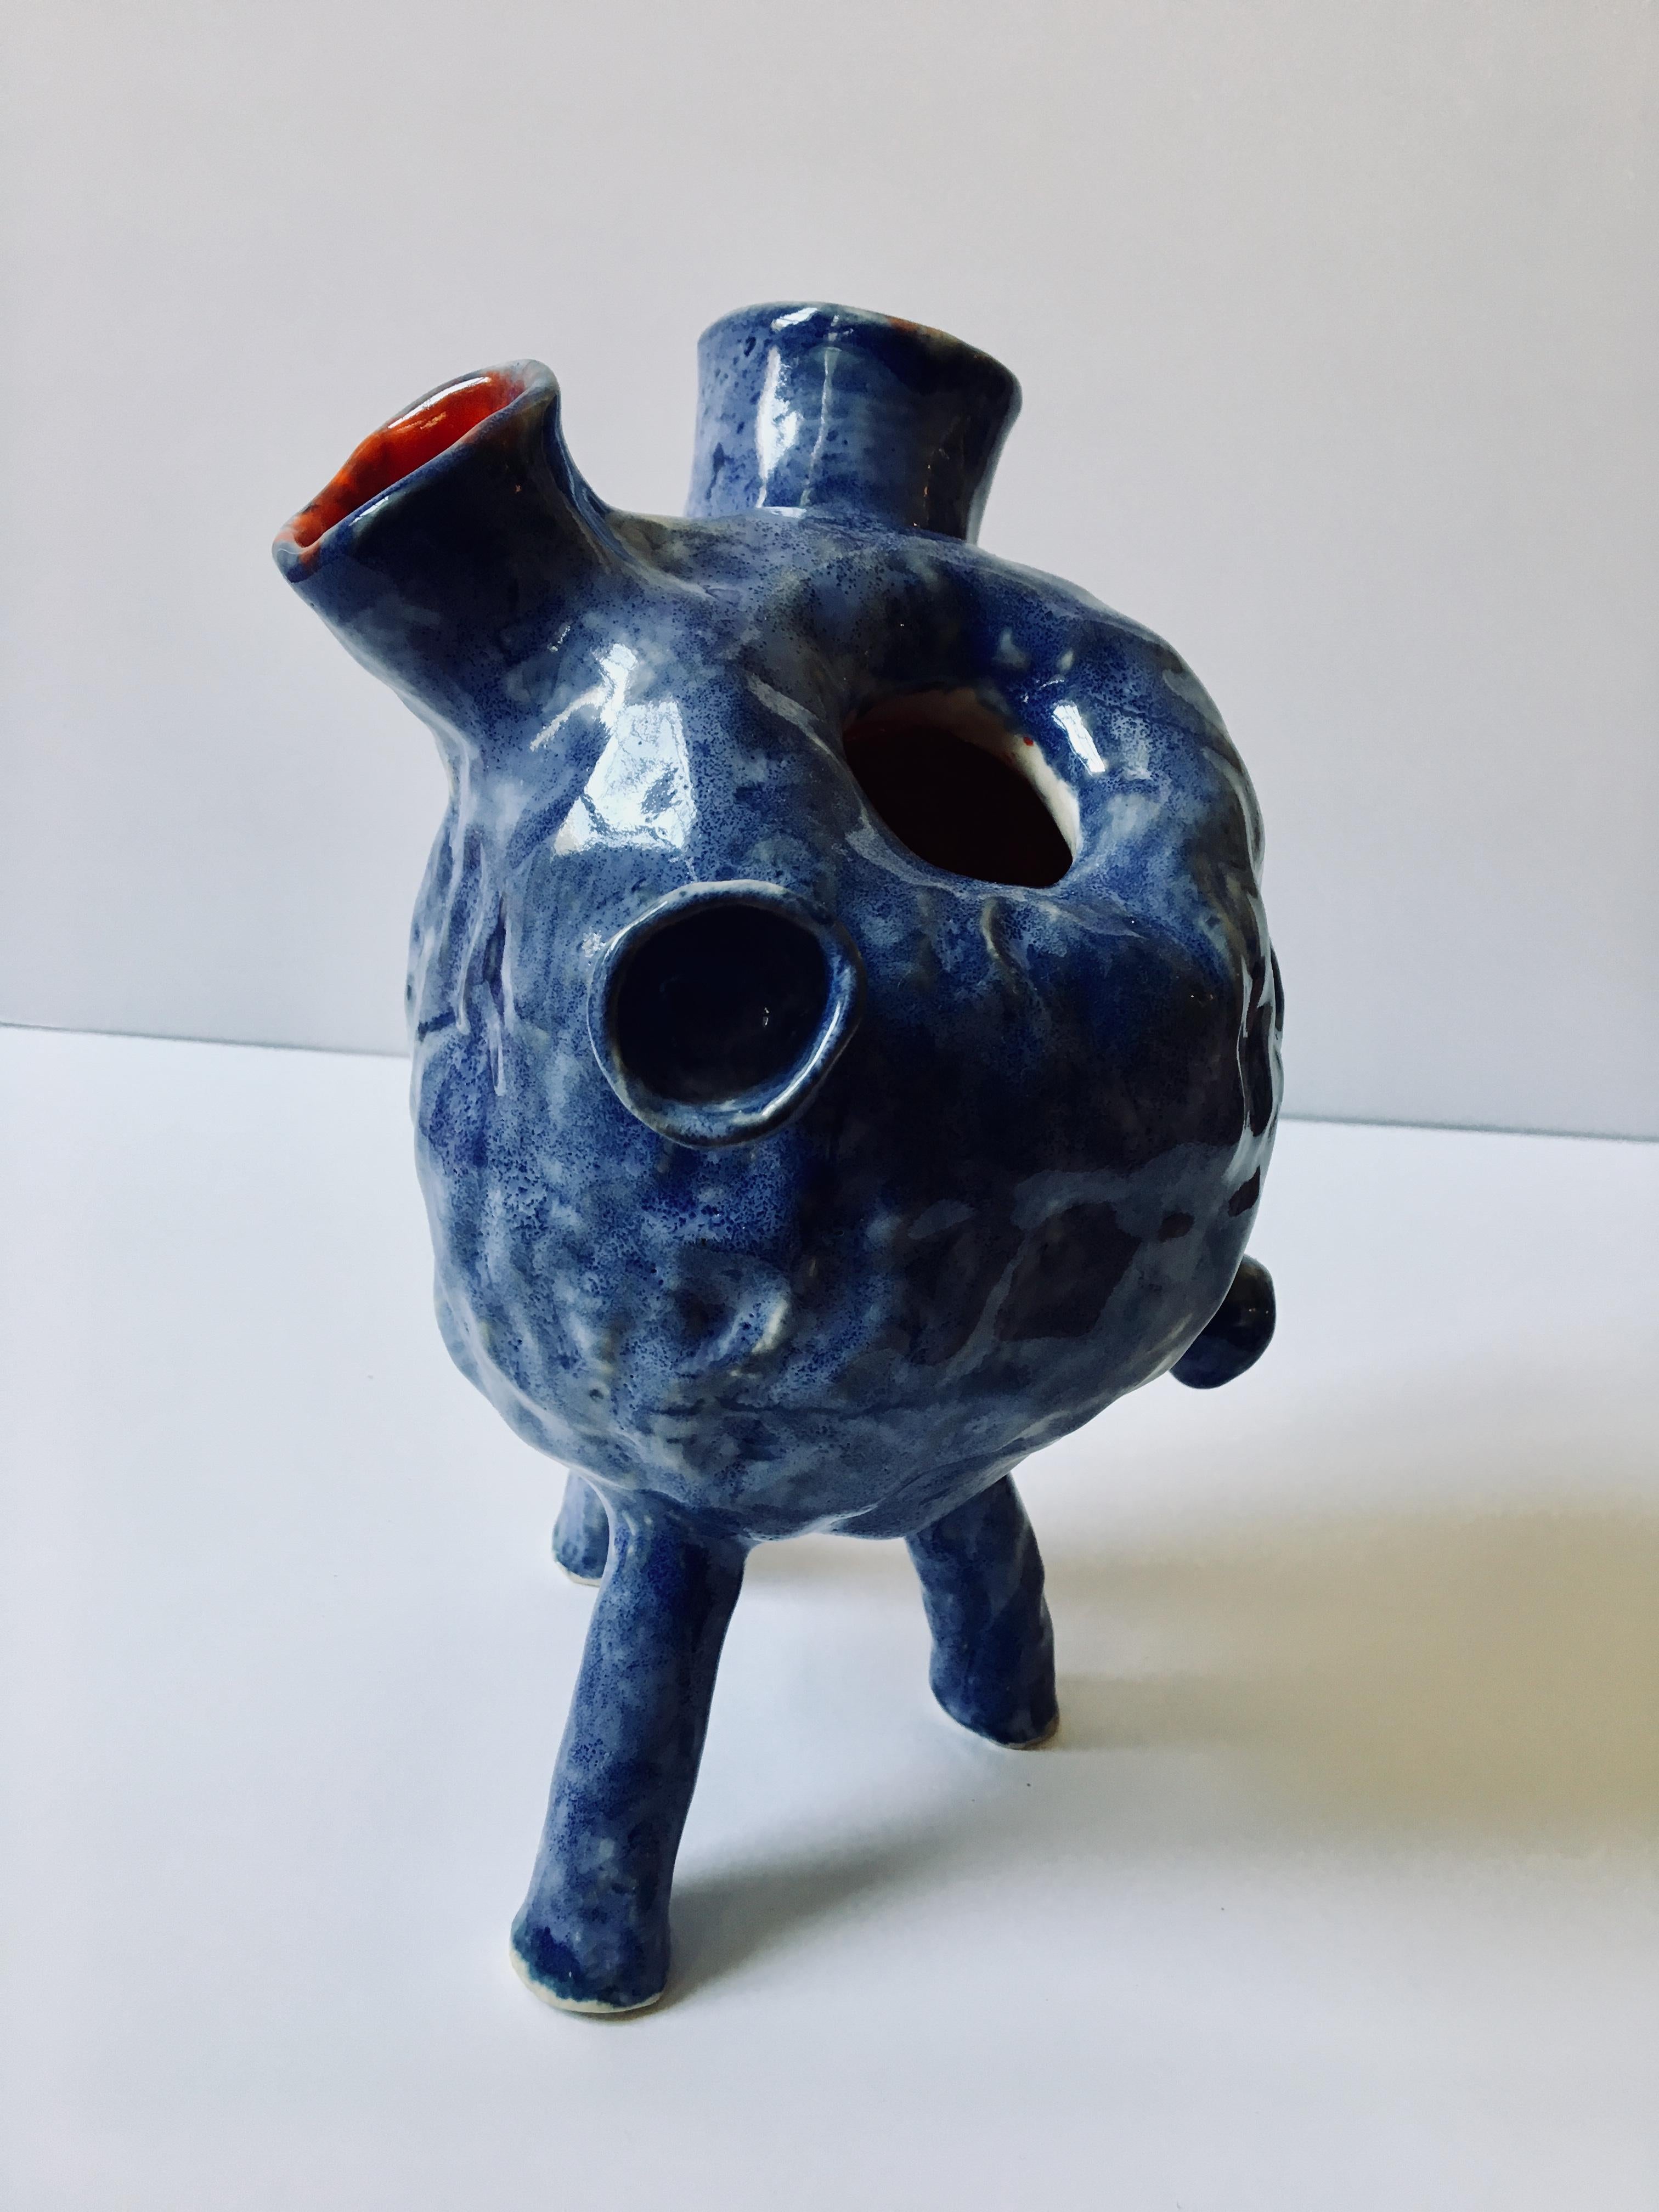 Sculpture ceramic vessel: Creature Medium No 4' 1